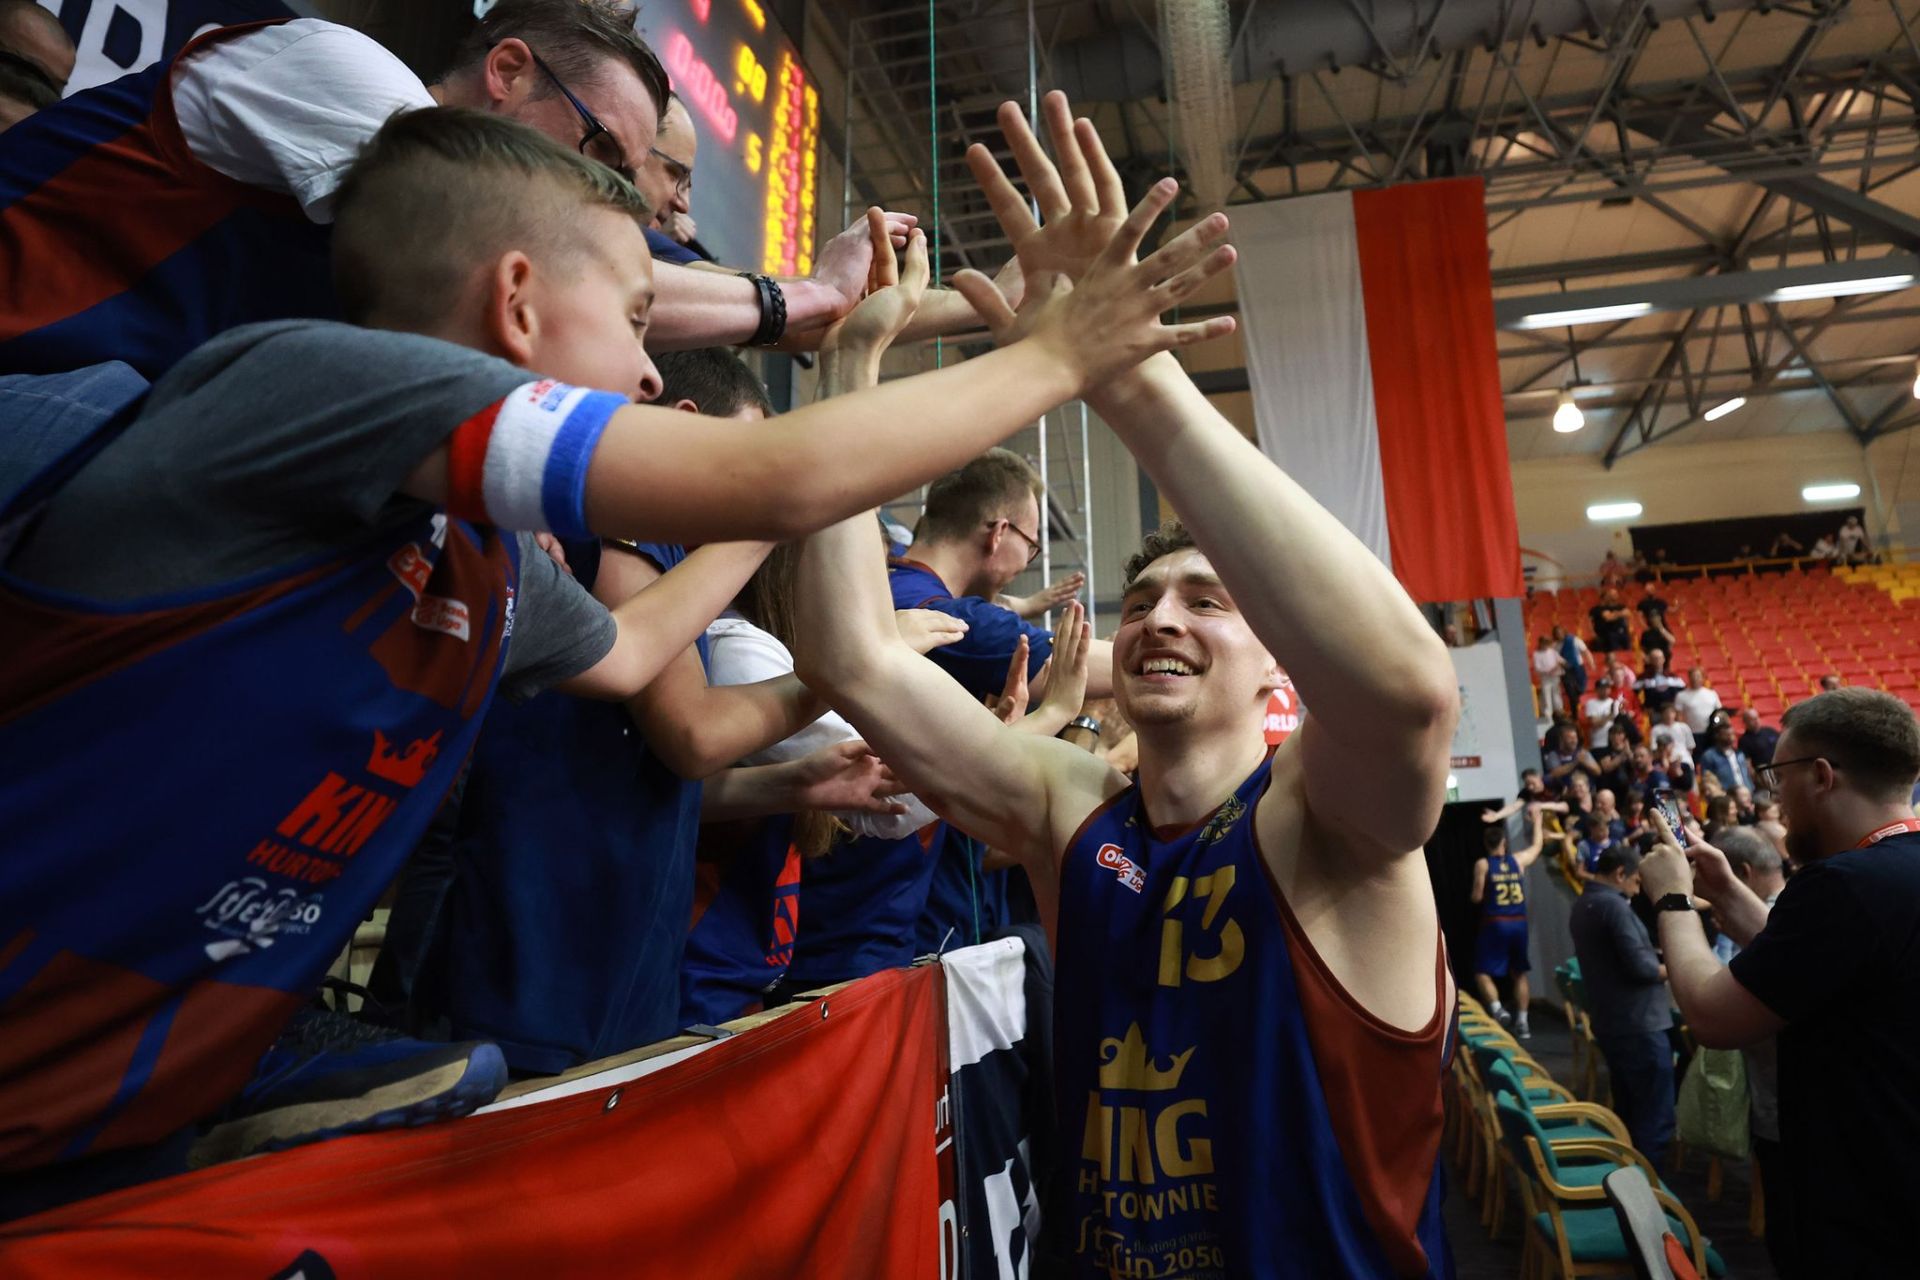 King Szczecin prowadzi w finale Orlen Basket Ligi 1:0 po pierwszym meczu w Sopocie. Wilki Morskie chcą po raz drugi wygrać z Treflem, aby być już w połowie drogi do obrony Mistrzostwa Polski.